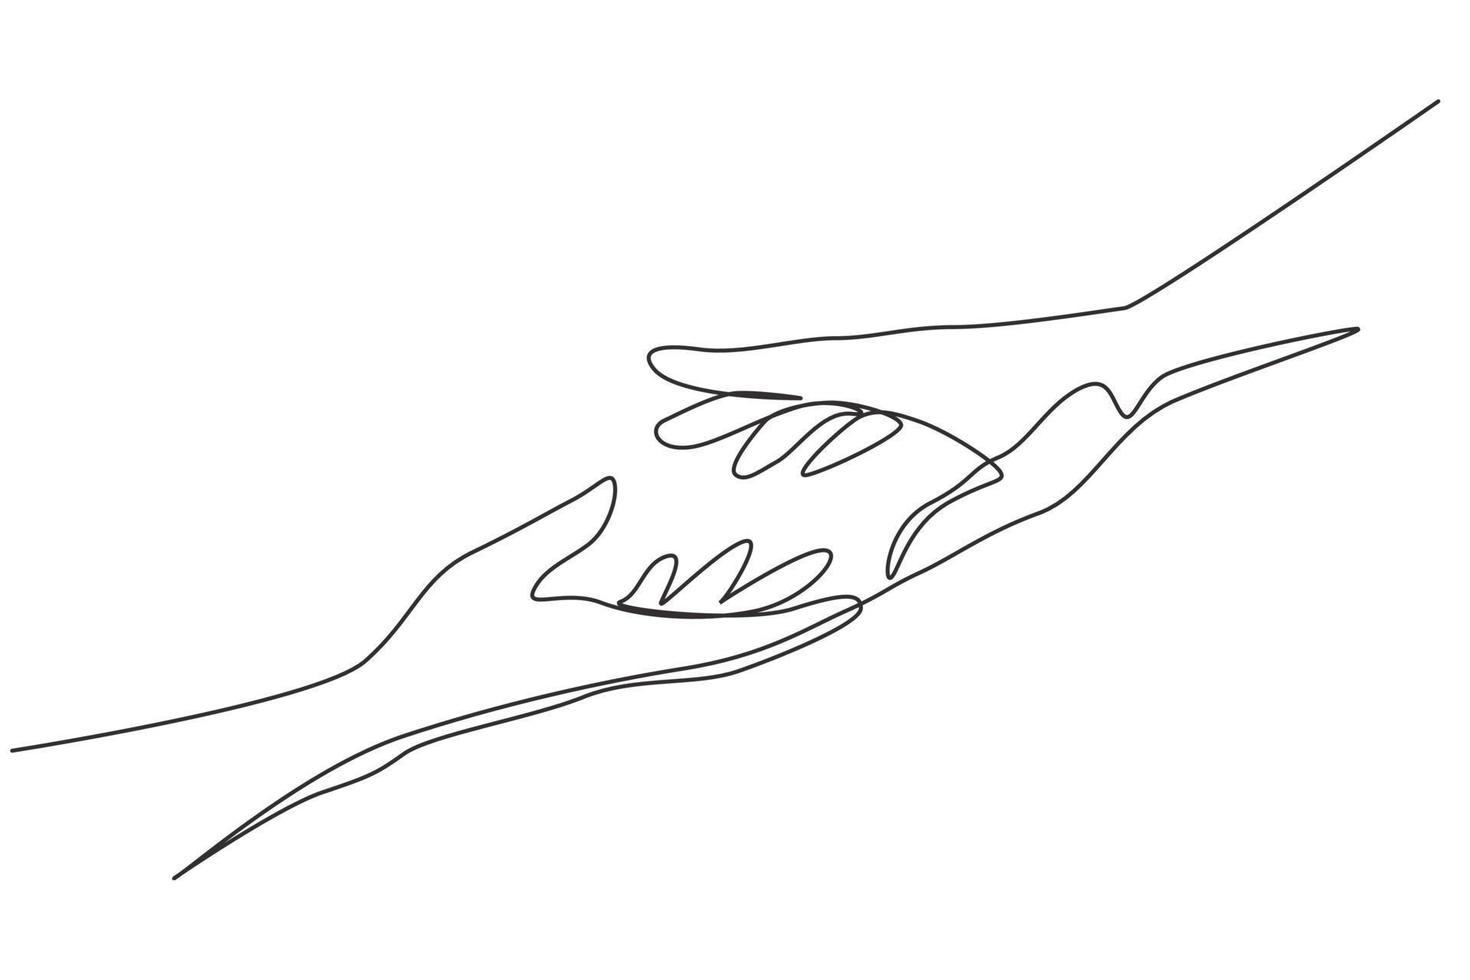 kontinuerlig en rad som ritar två händer som sträcker sig efter varandra. tecken eller symbol för kärlek, hopp, omtanke, hjälp. kommunikation med handgester en rad rita design vektorgrafisk illustration vektor